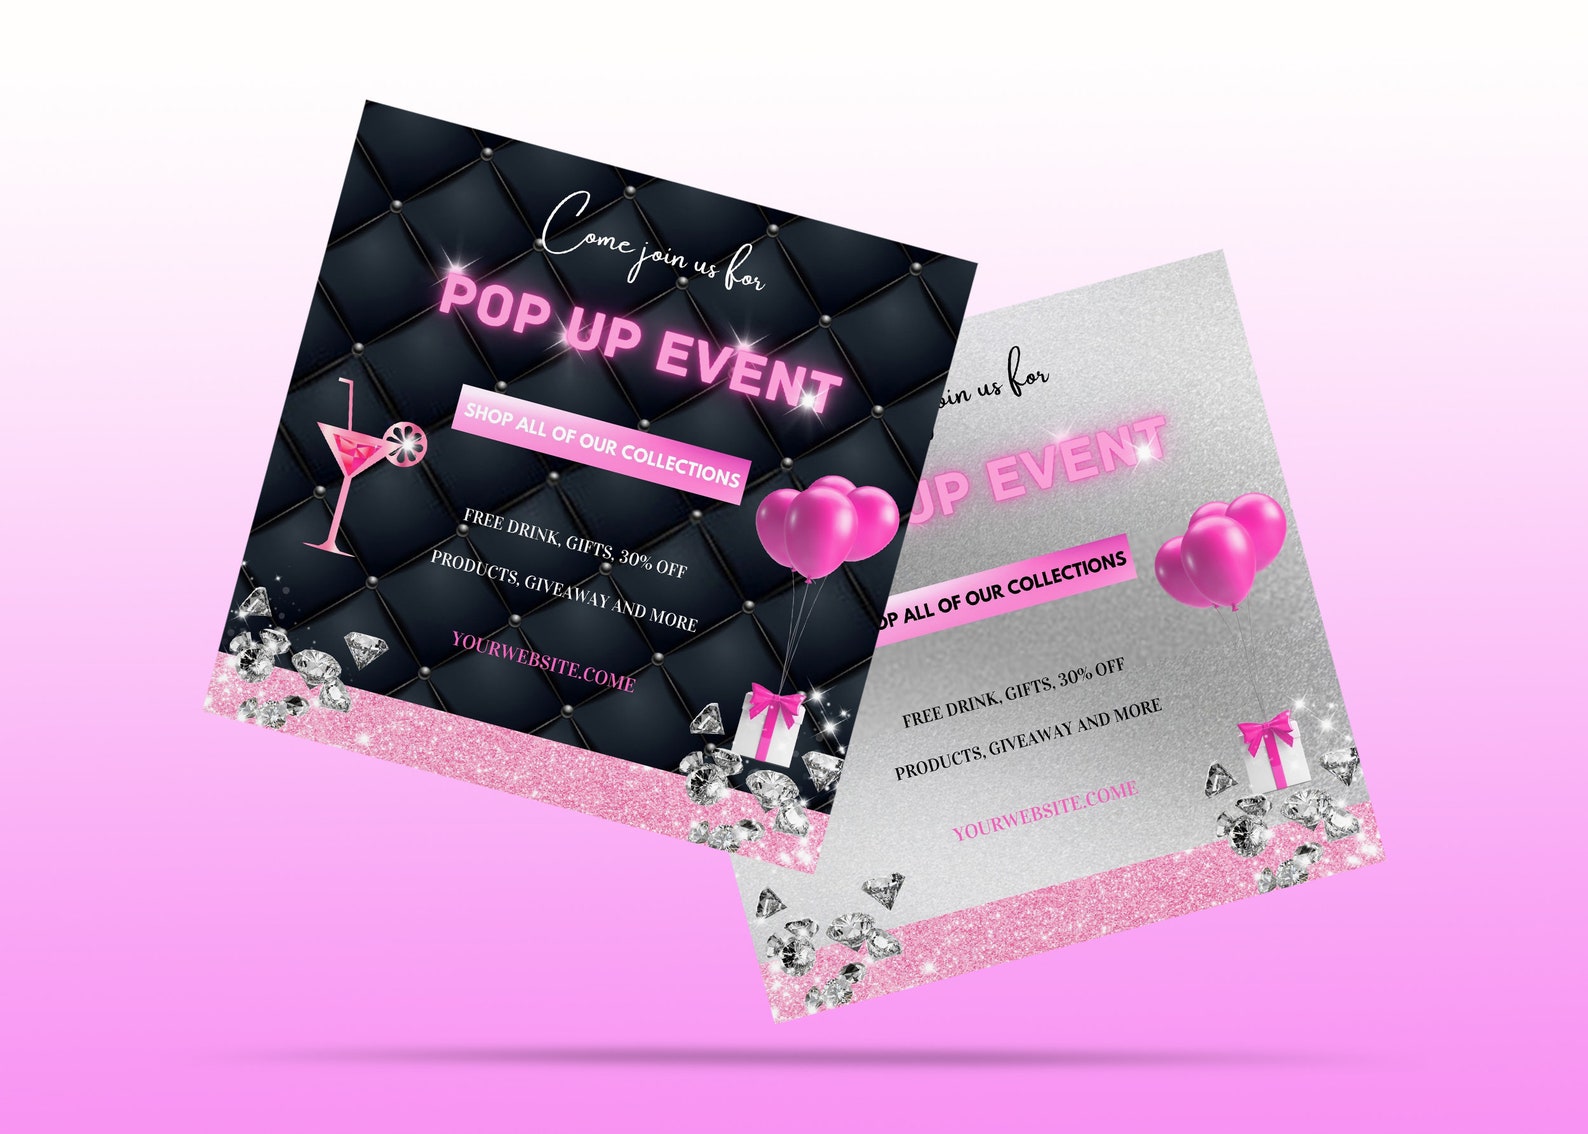 Pop up shop flyer event sales announcement Pop up event | Etsy